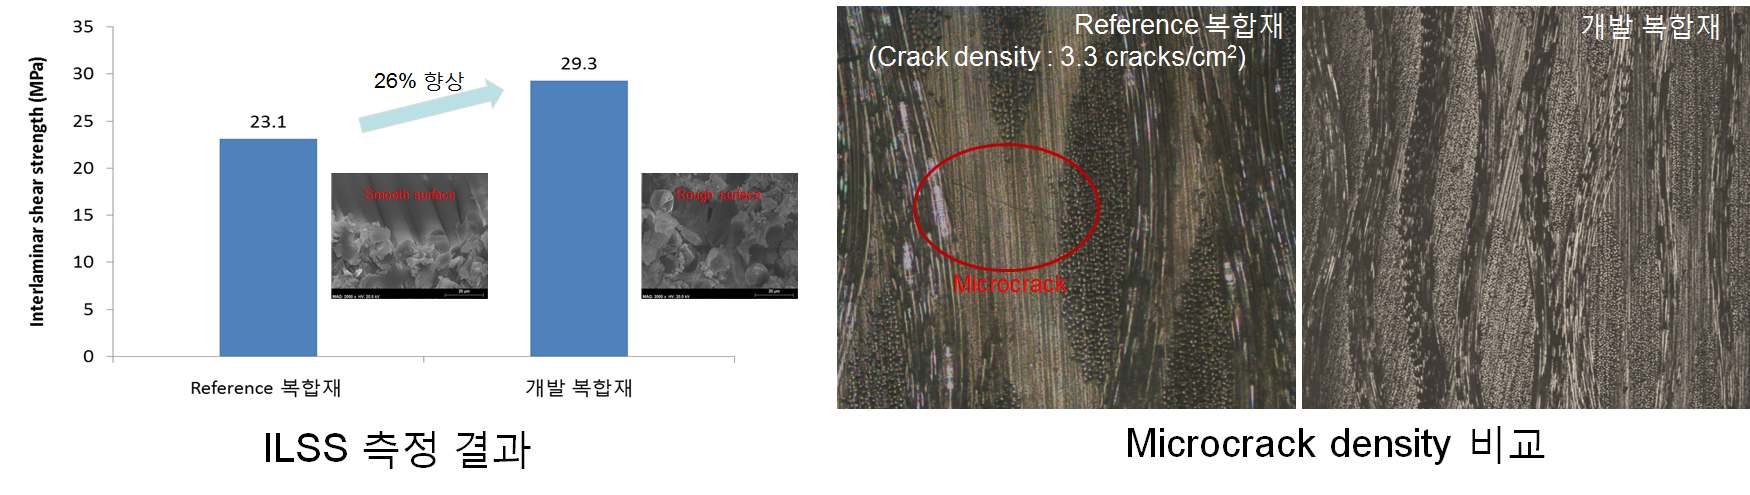 그림 3-4-2 기존 복합재와 개발 복합재의 ILSS 및 microcrack 비교